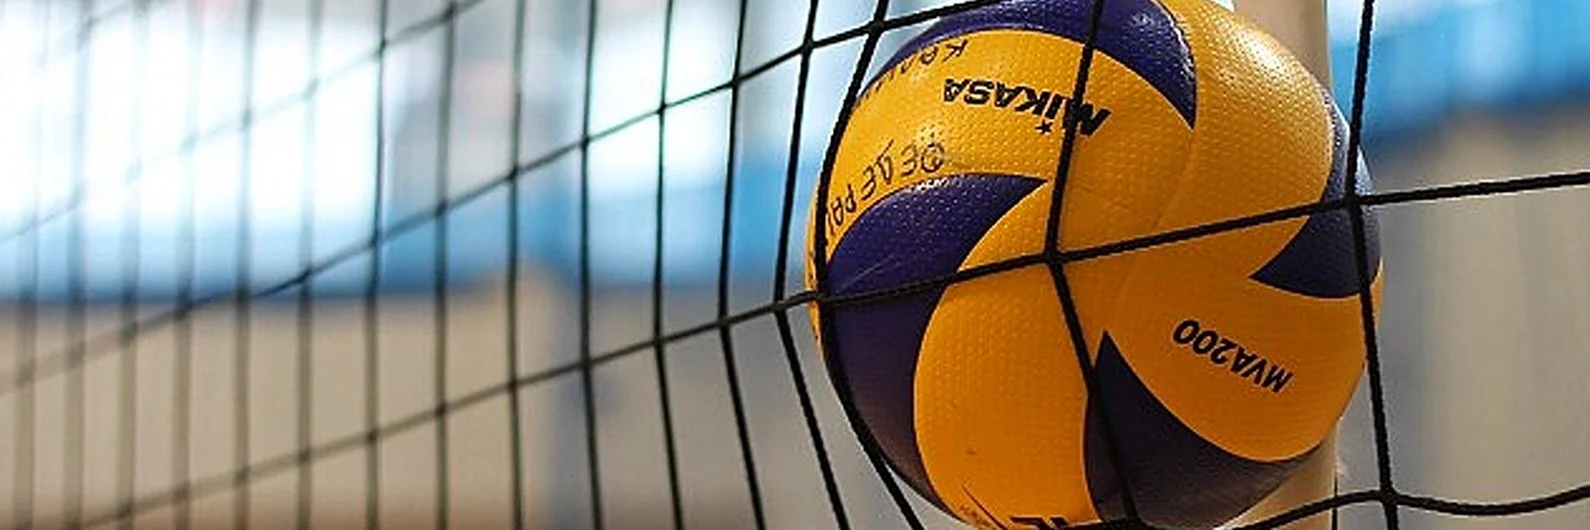 Волейбольный мяч возле сетки